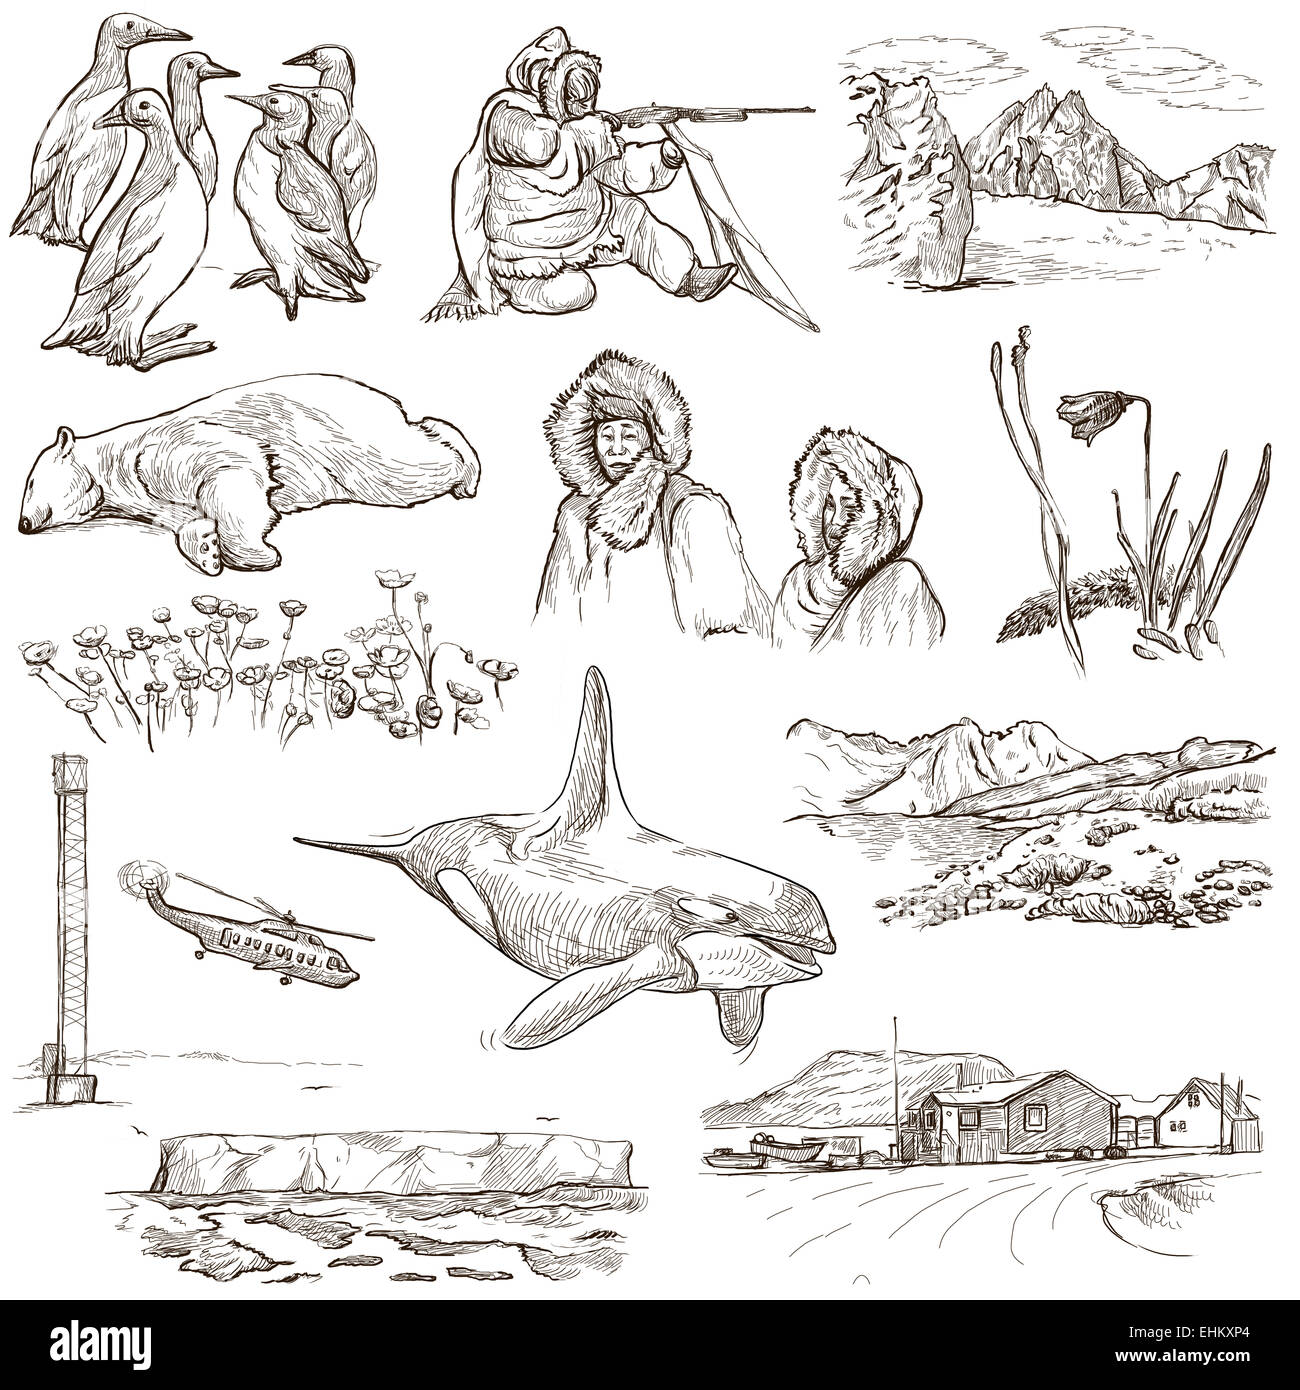 Serie Reisen: polare Regionen (Antarktis und Grönland) - Sammlung (Nr. 1) von einem handgezeichneten Illustrationen. Beschreibung: Vollständige si Stockfoto